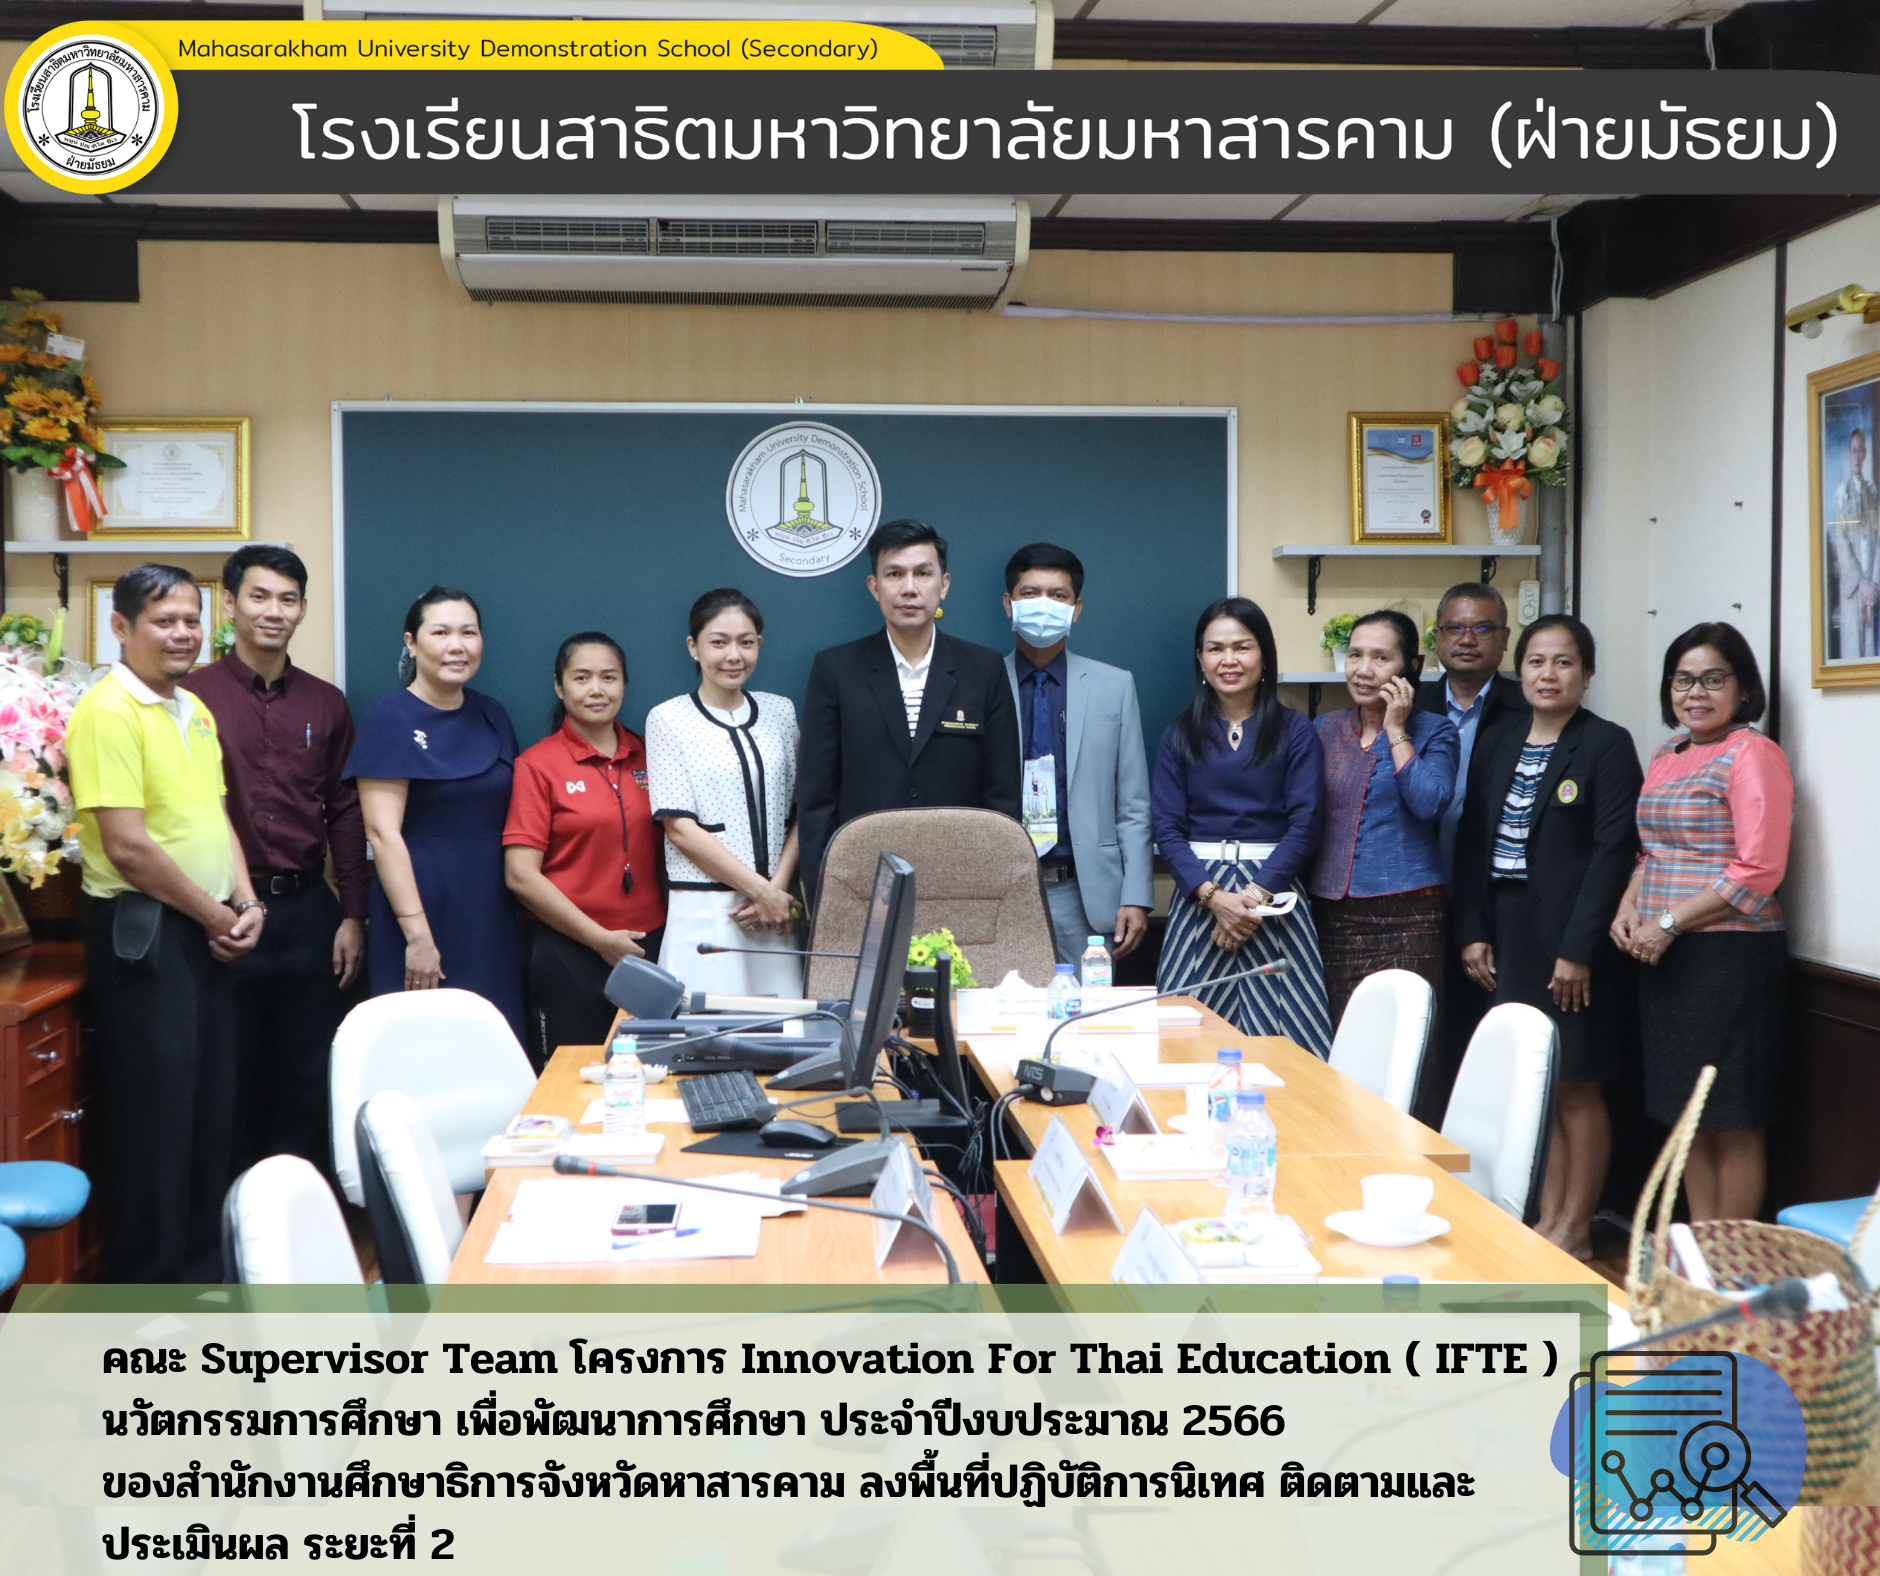 คณะ Supervisor Team โครงการ Innovation For Thai Education ( IFTE ) นวัตกรรมการศึกษา       เพื่อพัฒนาการศึกษา ประจำปีงบประมาณ 2566 ของสำนักงานศึกษาธิการจังหวัดหาสารคาม ลงพื้นที่ปฏิบัติการนิเทศ ติดตาม และประเมินผล ระยะที่ 2 